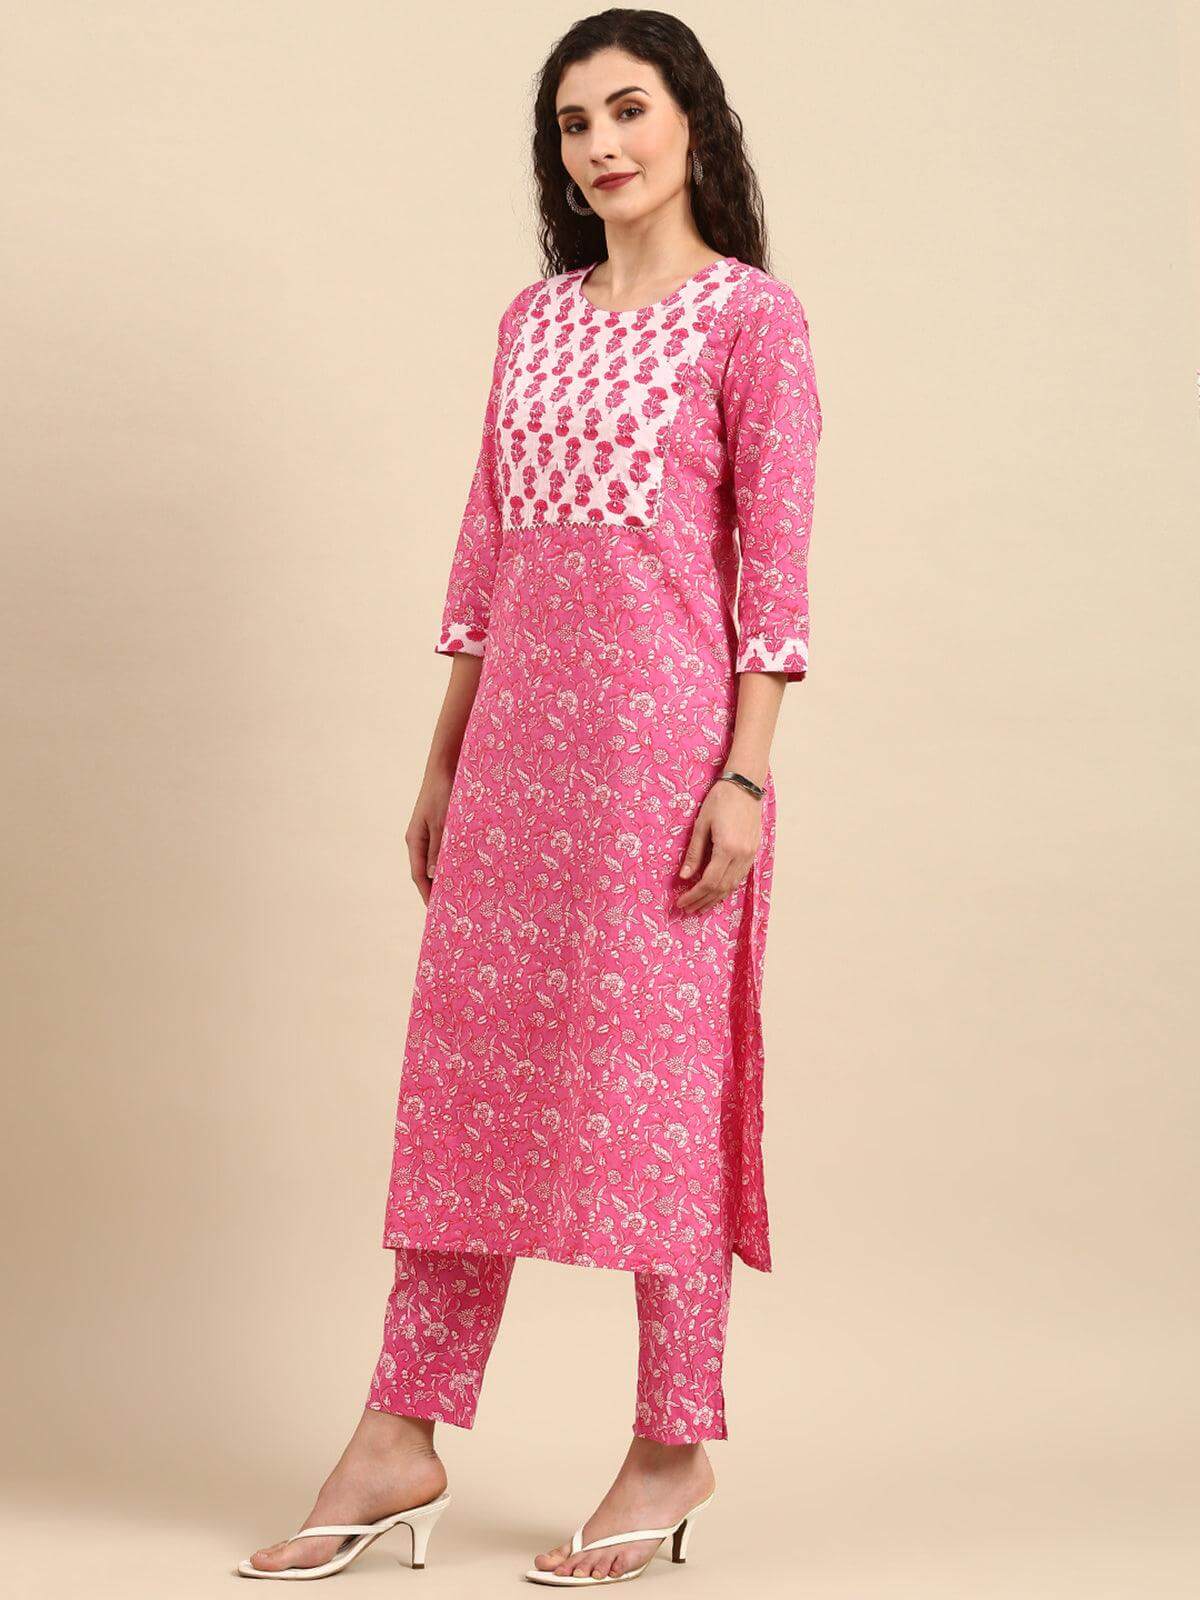 Pink Cotton Floral Print Kurta with Pant and Dupatta